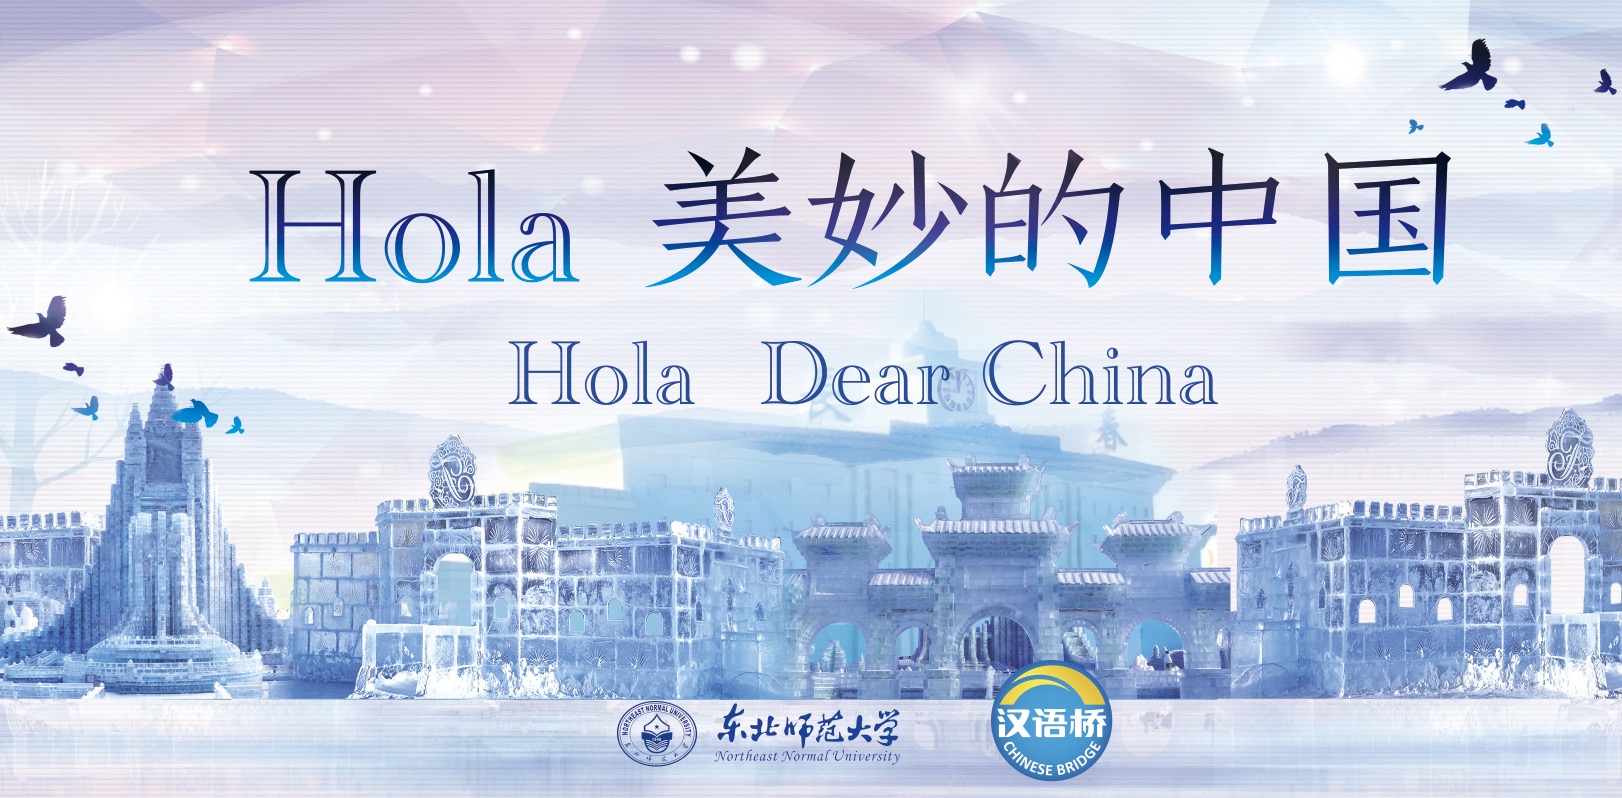 Hola, Dear China